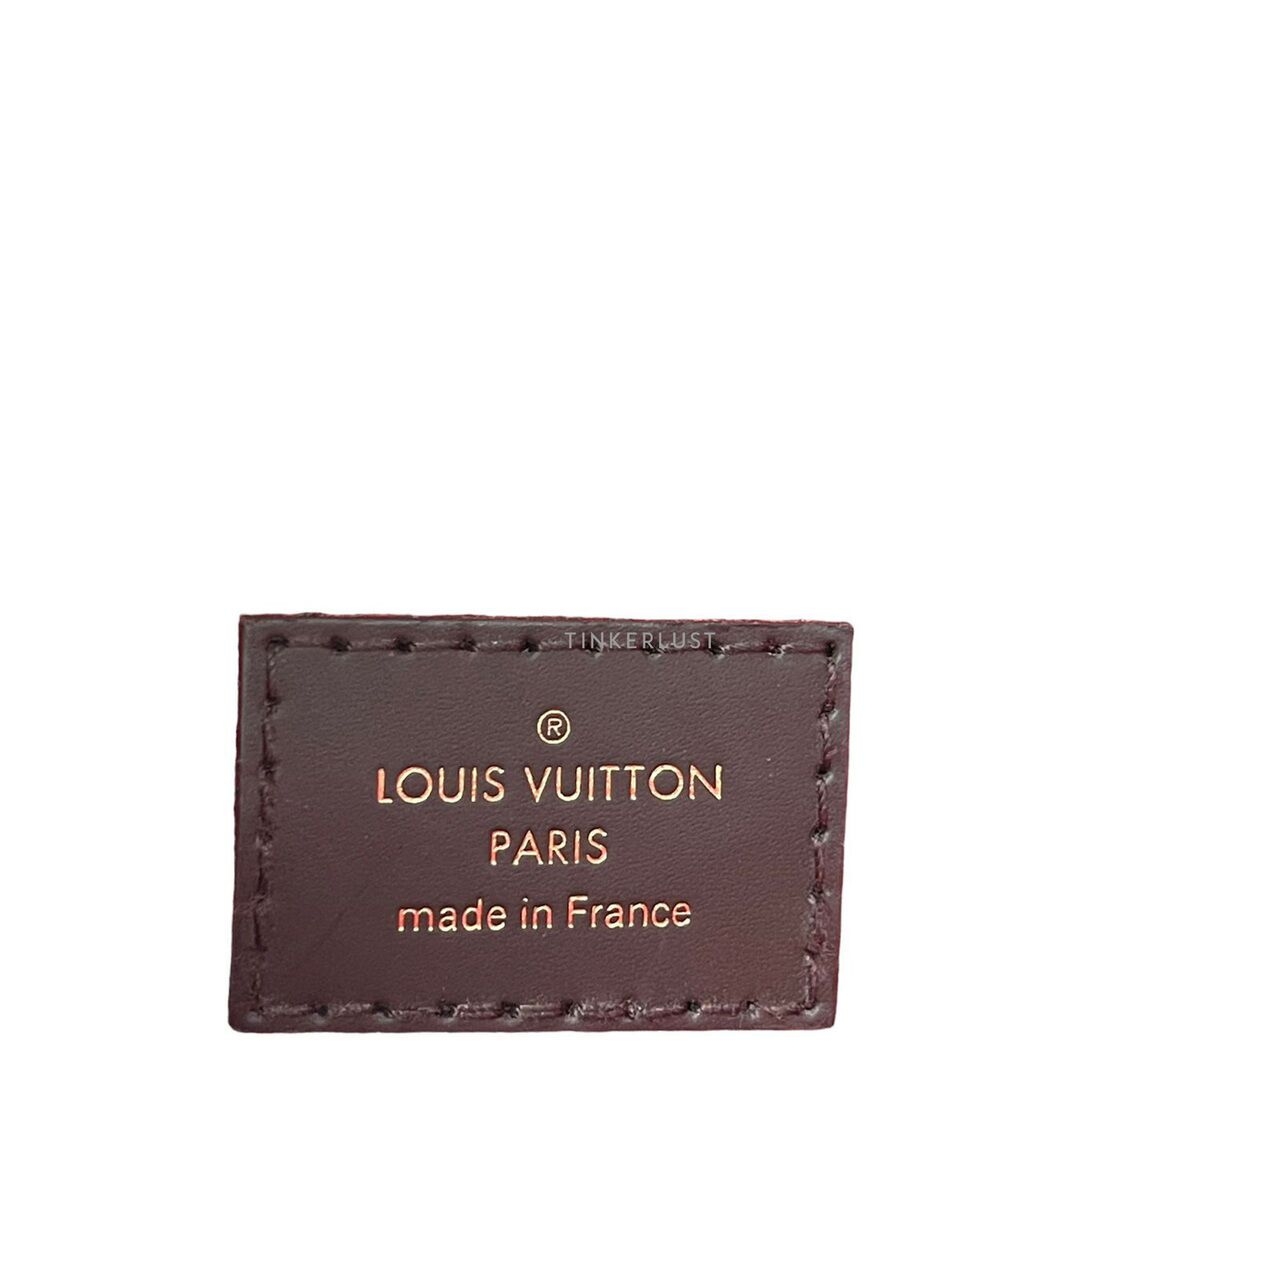 Louis Vuitton Croisette Damier Ebene 2019 Satchel